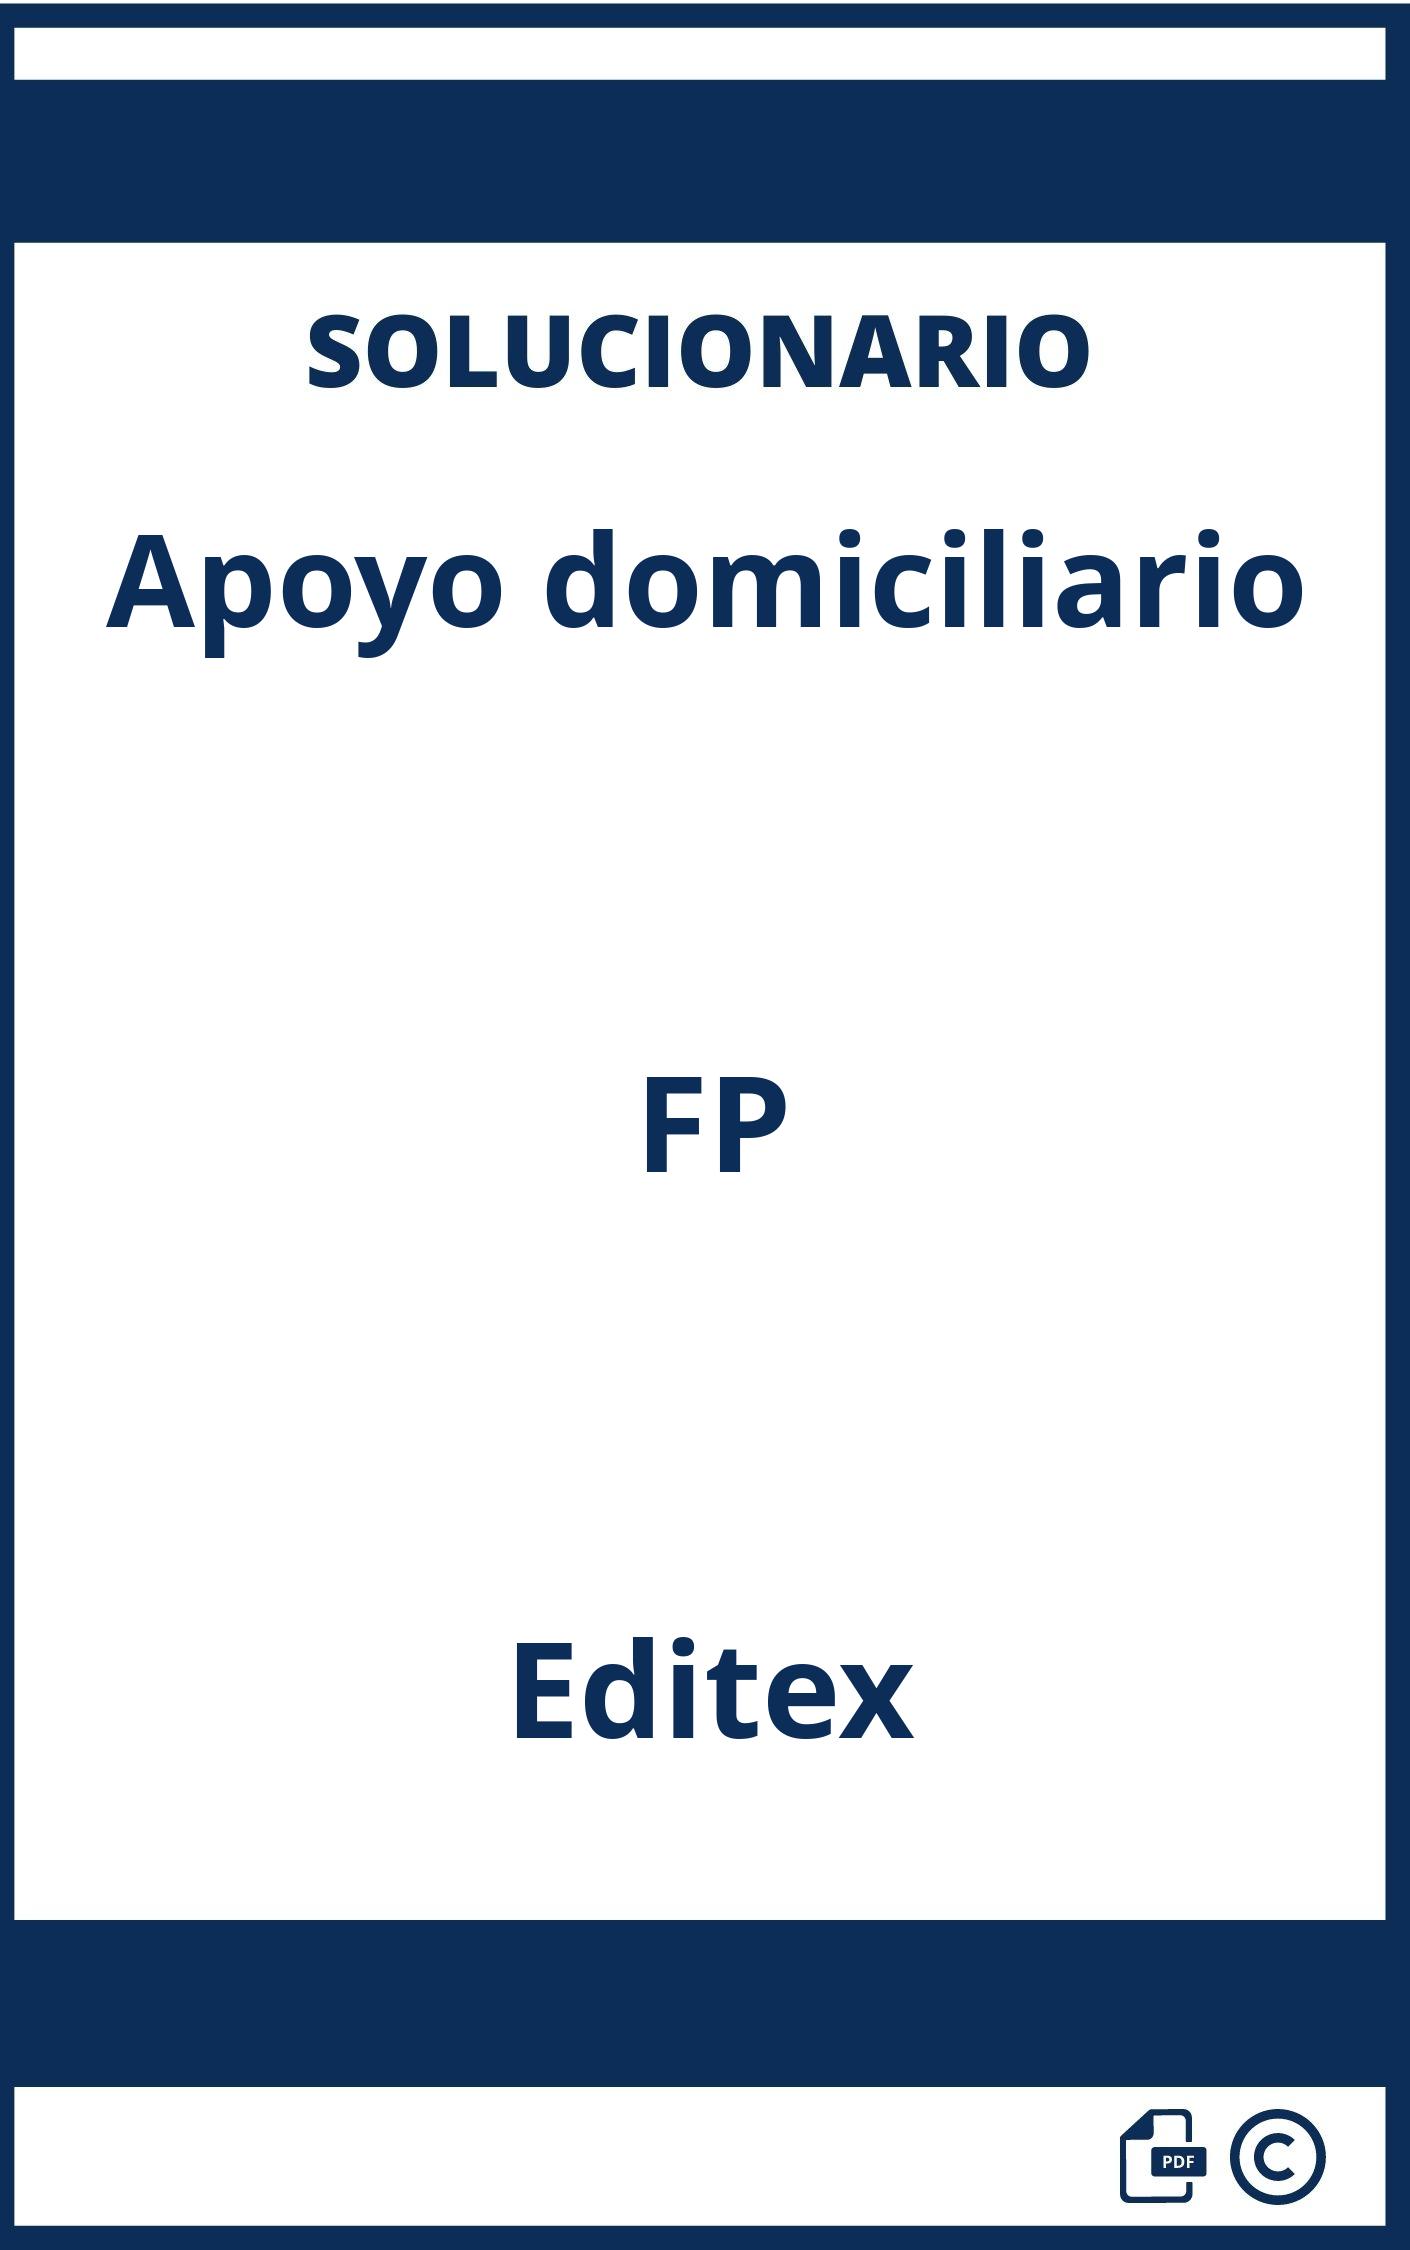 Solucionario Apoyo domiciliario FP Editex